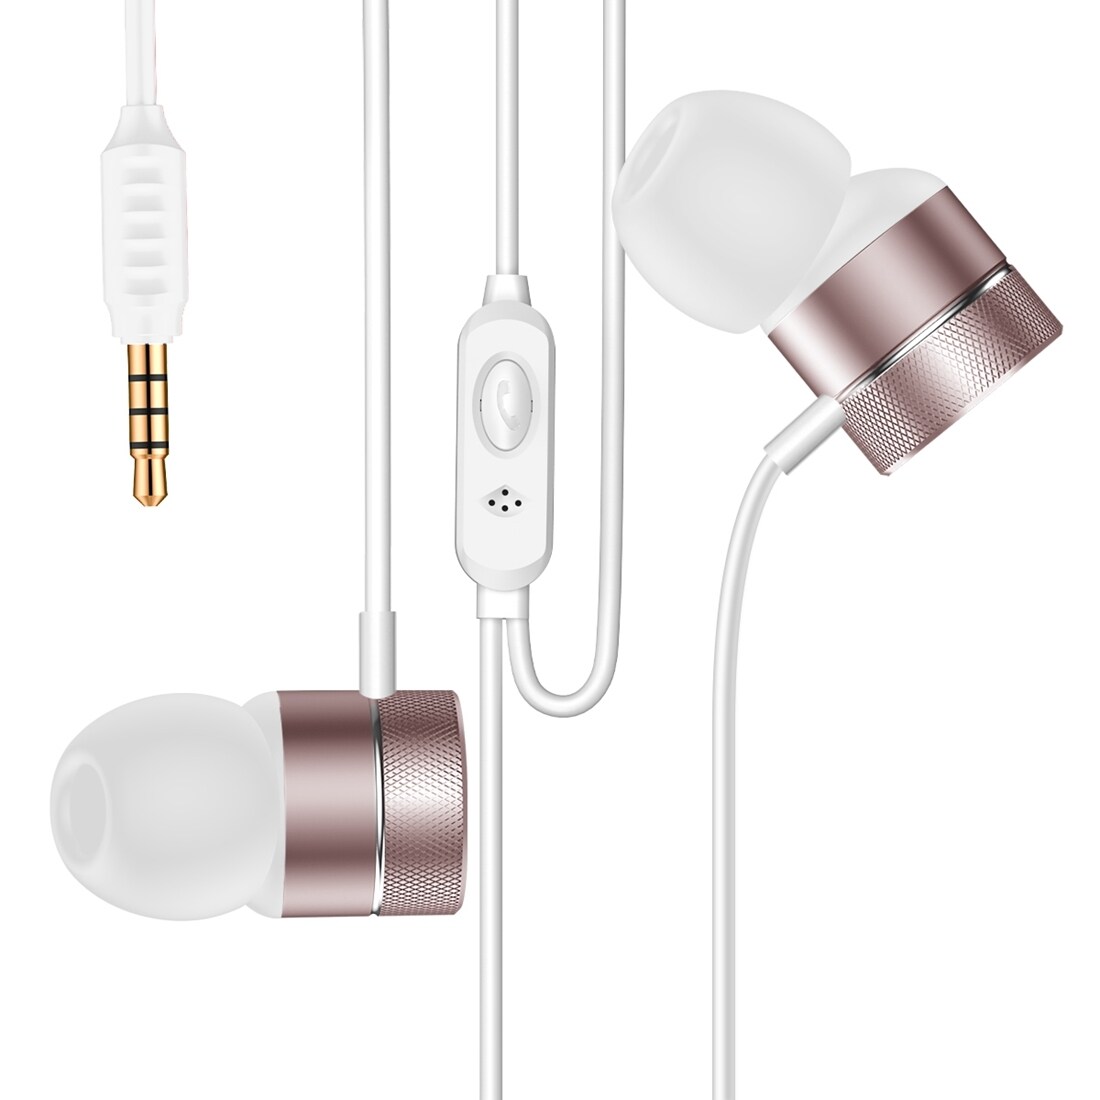 Baseus Encok In-Ear Earphone med fjern & vinklingsbar høyttaler